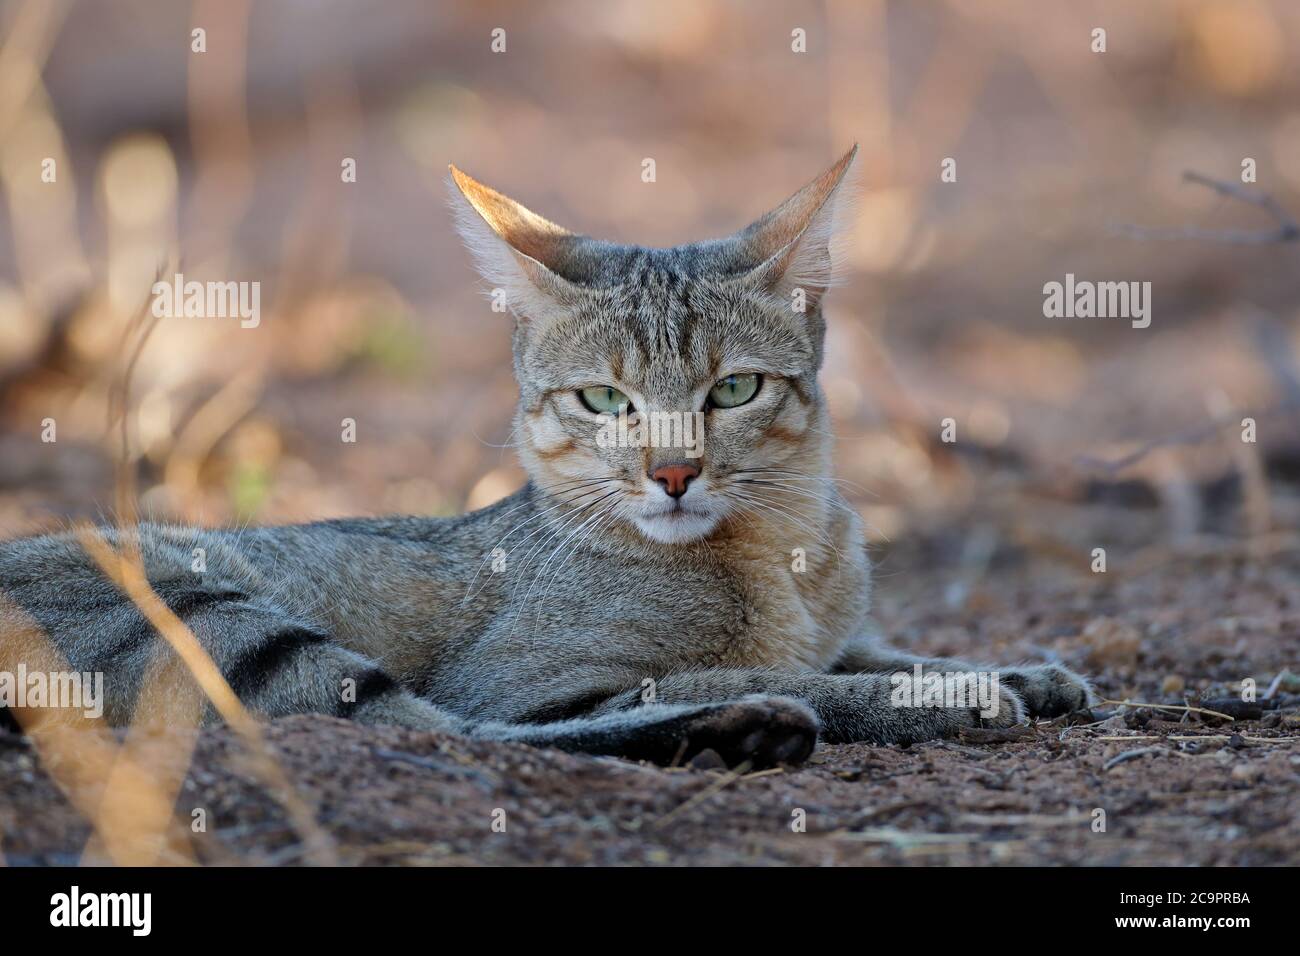 Retrato de un gato salvaje africano (Felis silvestris lybica), el desierto de Kalahari, Sudáfrica Foto de stock